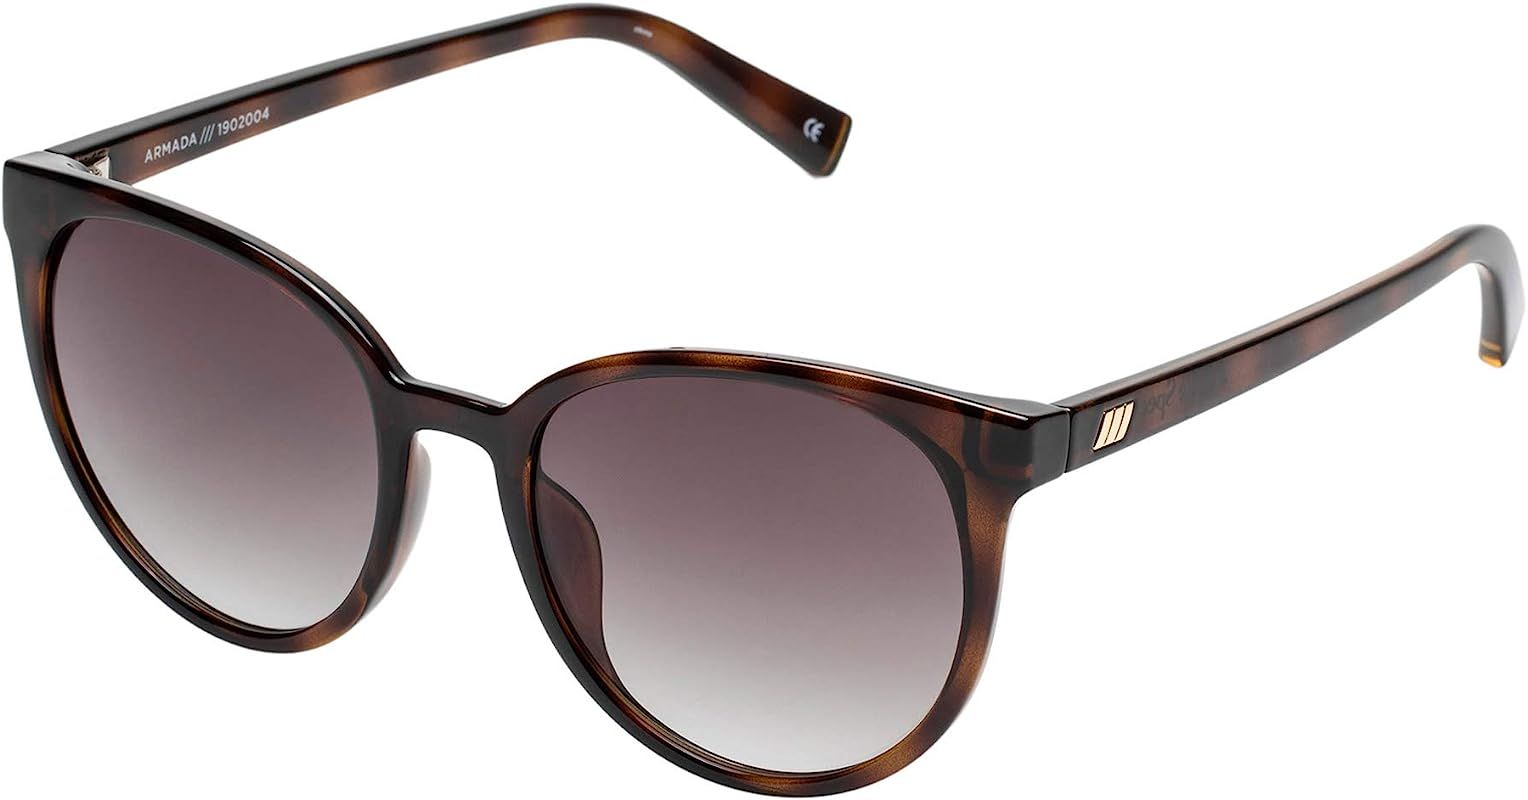 Le Specs Women's Armada Sunglasses, Black/Smoke Grad, One Size | Amazon (US)